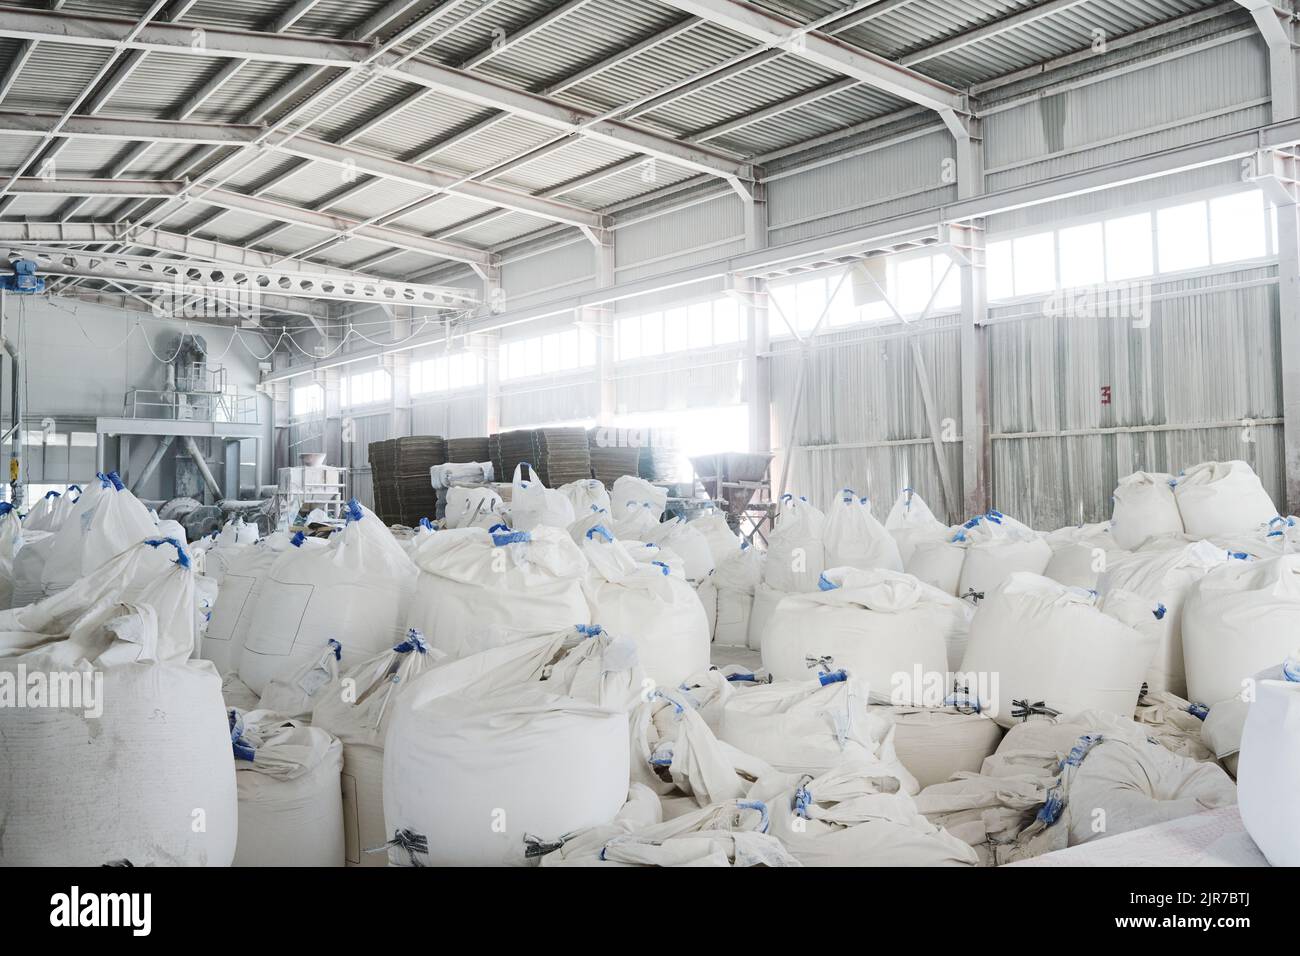 Teil eines geräumigen Lagerhauses oder Lagerraums mit Haufen riesiger weißer Säcke, die lose Rohstoffe für die industrielle Produktion enthalten Stockfoto